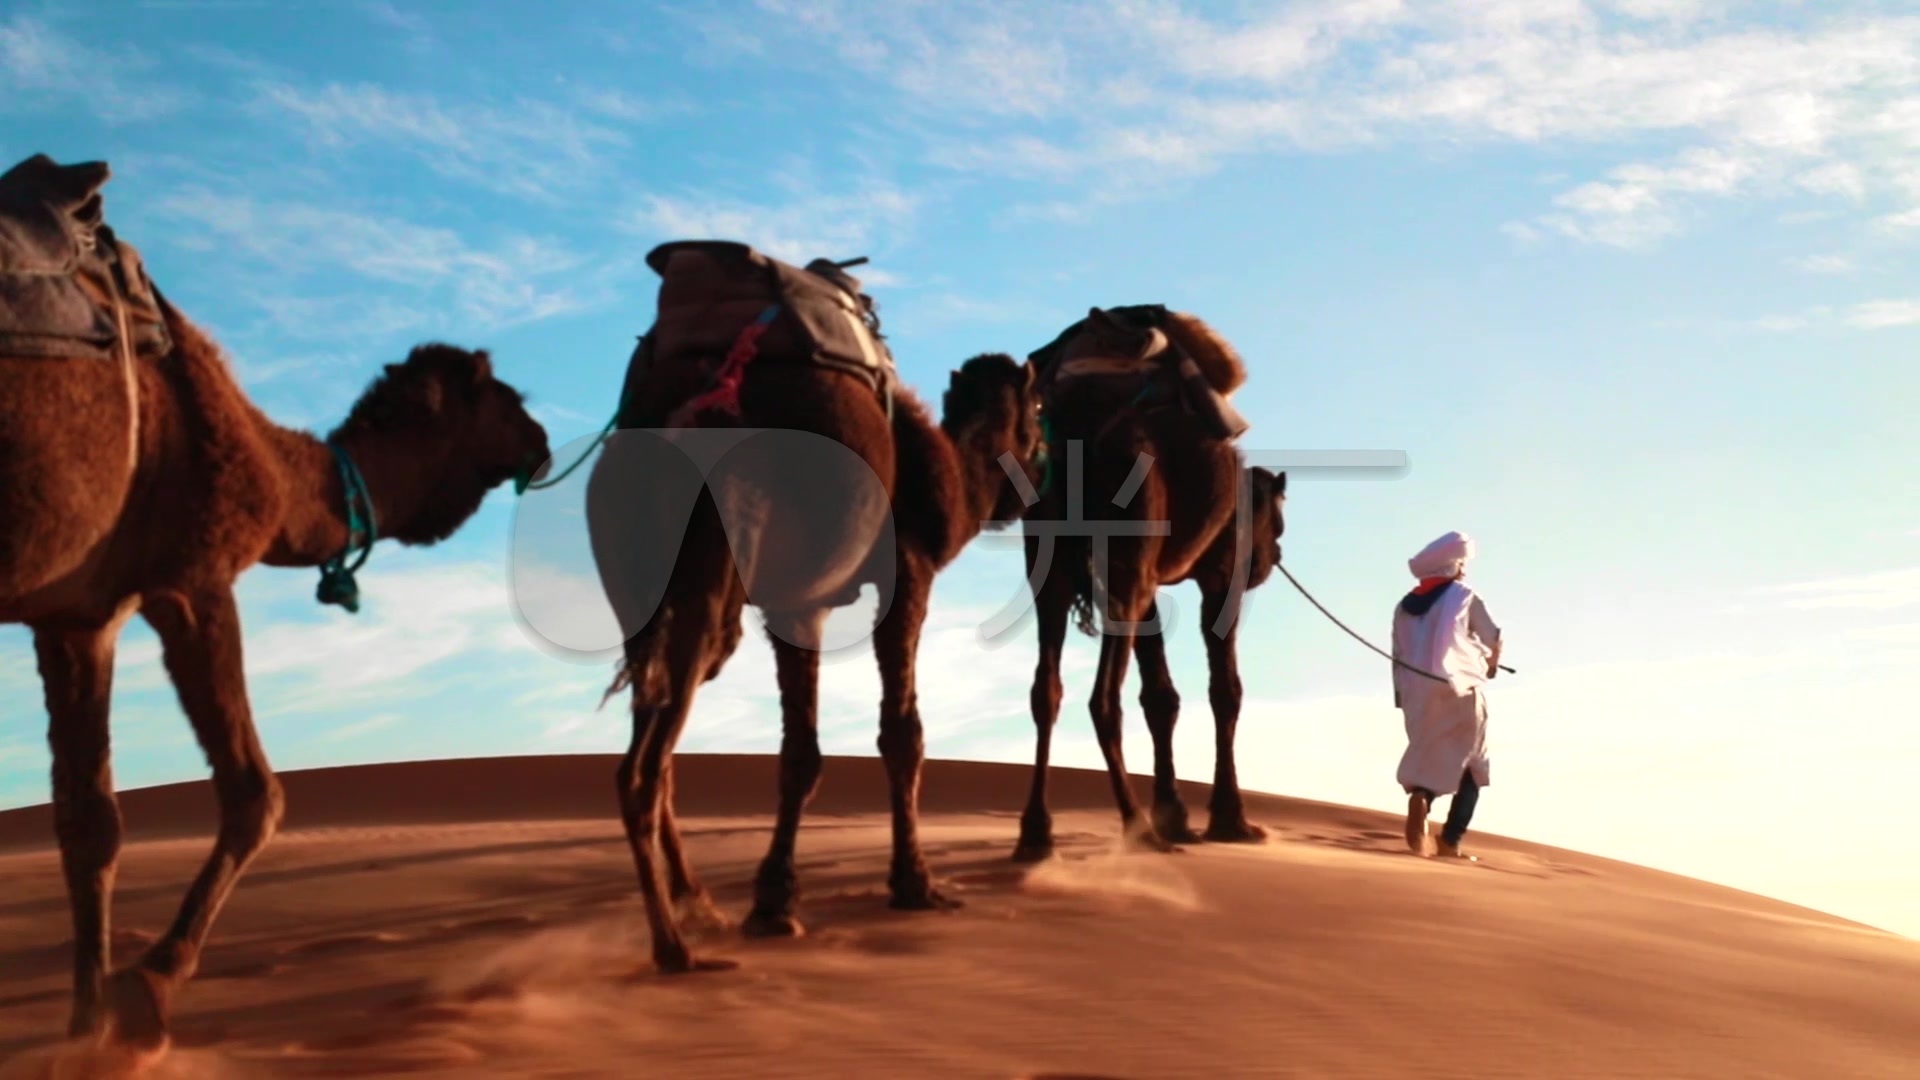 沙漠行走的骆驼图片 - 25H.NET壁纸库